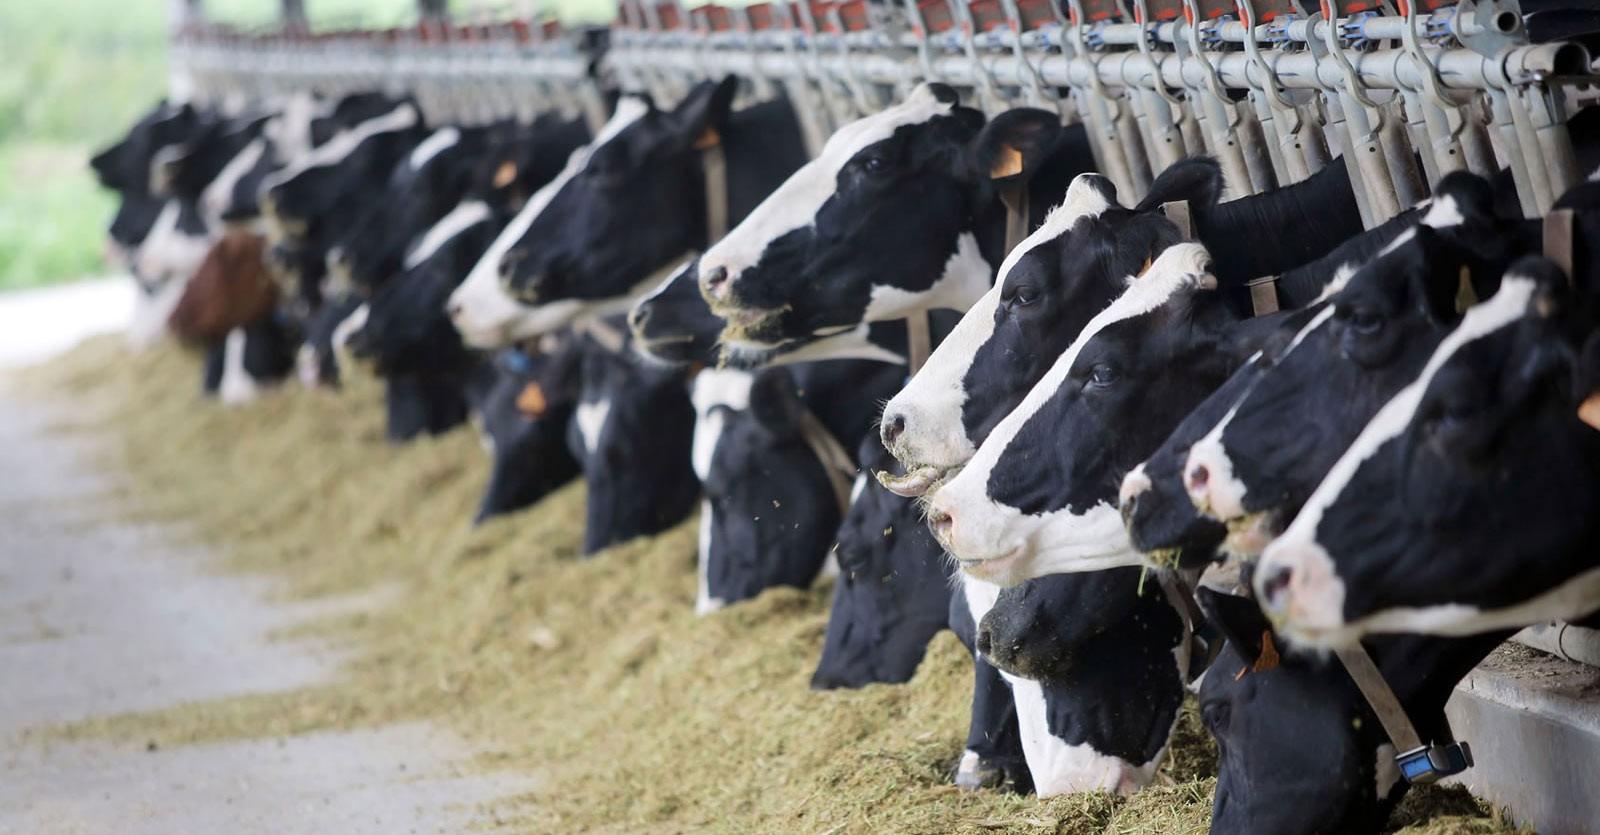 Confagricoltura Taranto, Lazzàro: “L’obbligo d’origine in etichetta tutela il latte Made in Italy: un bene per produttori e consumatori”